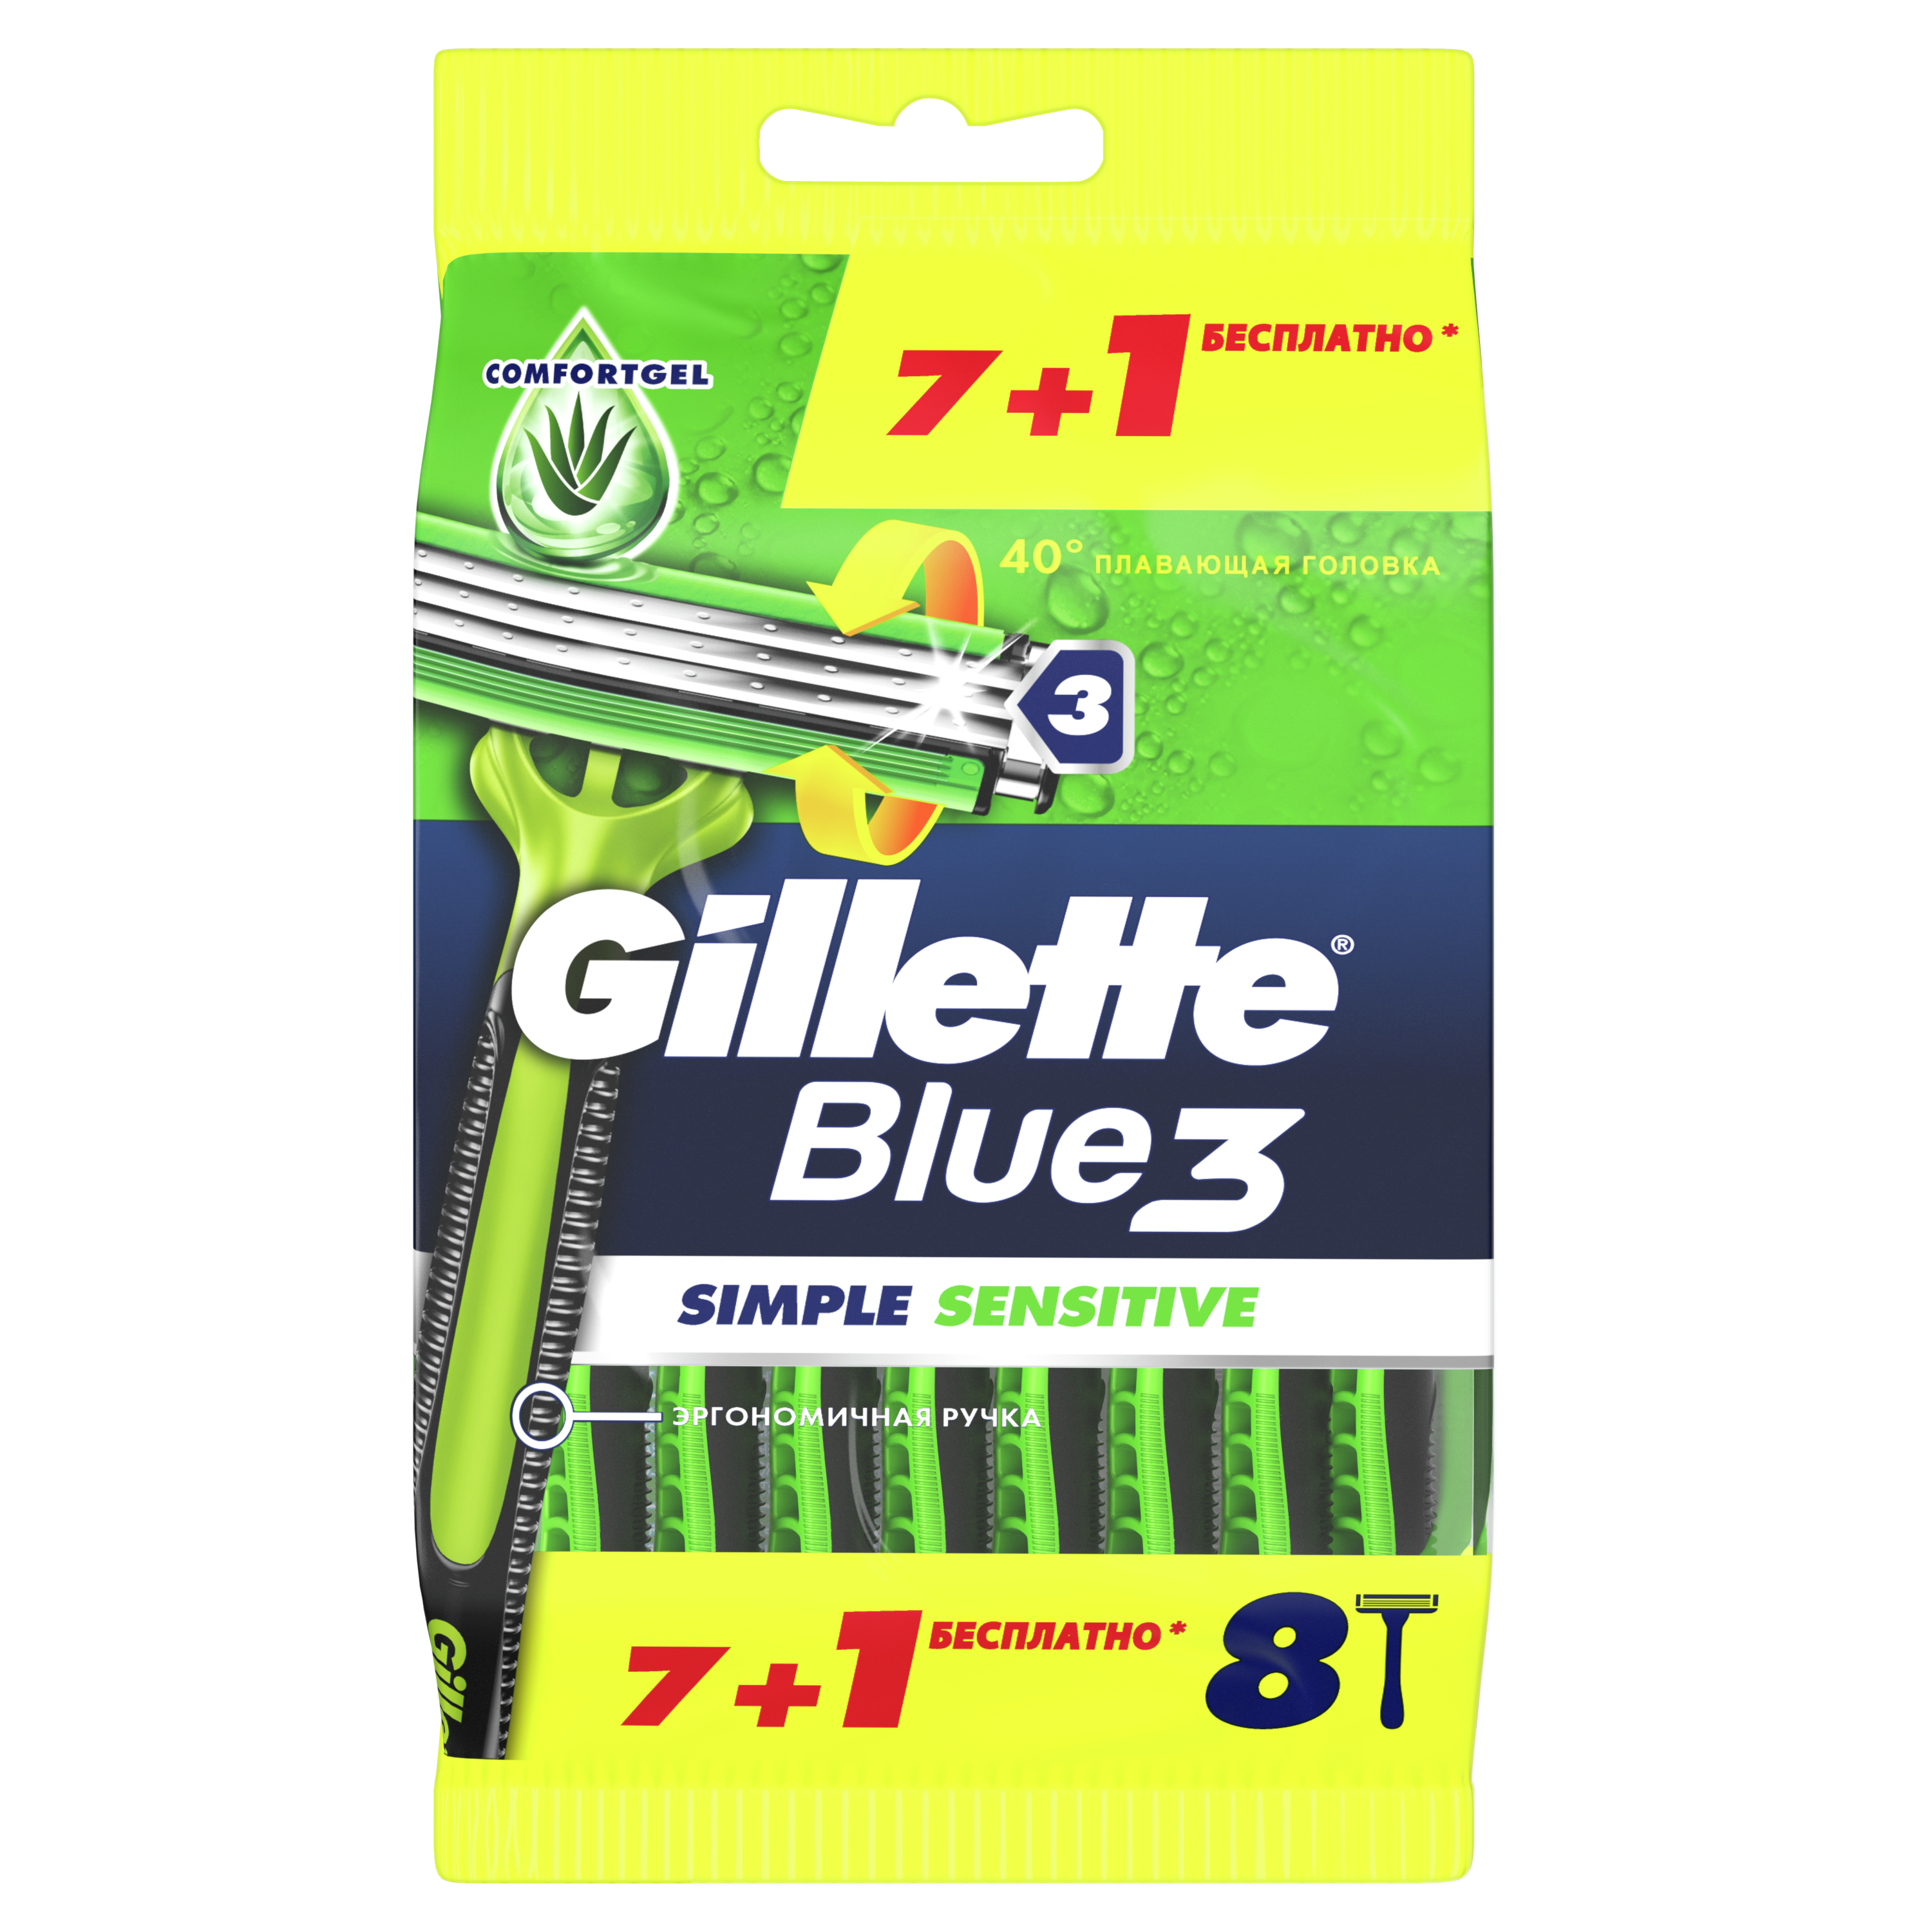 Бритвенный станок Gillette Blue 3 Simple Sensitive одноразовый для мужчин 8 шт arko бритвенный станок одноразовый pro 3 тройное лезвие 3 0